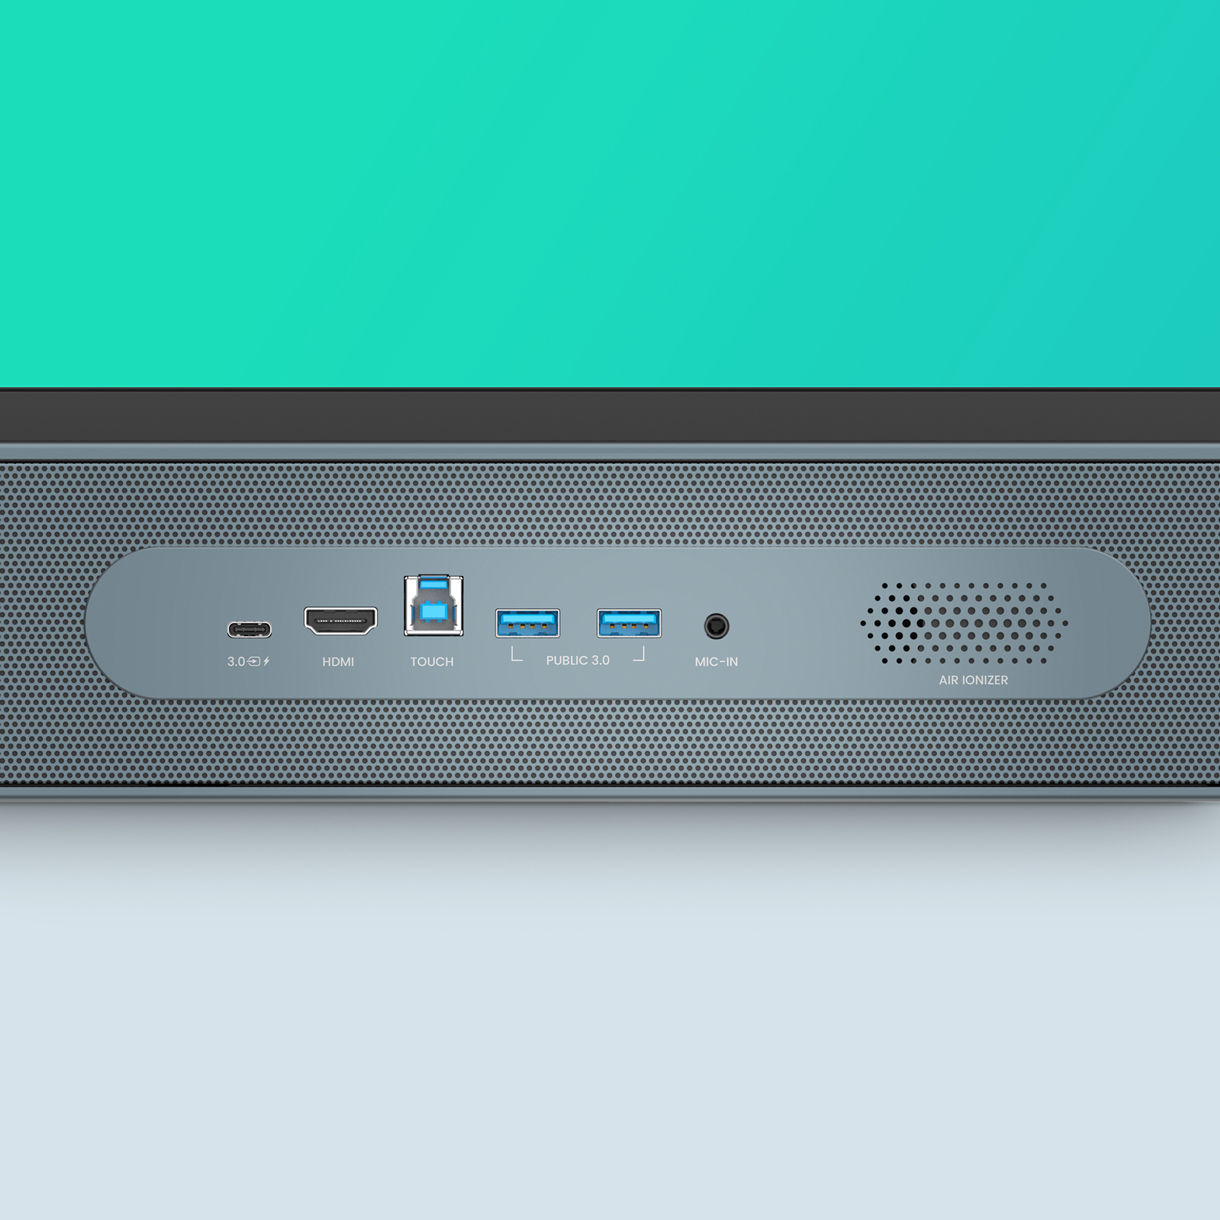 RP04 dilengkapi port USB-C 100W yang memungkinkan Anda menampilkan layar, mengisi daya perangkat, dan mengaktifkan touch back.